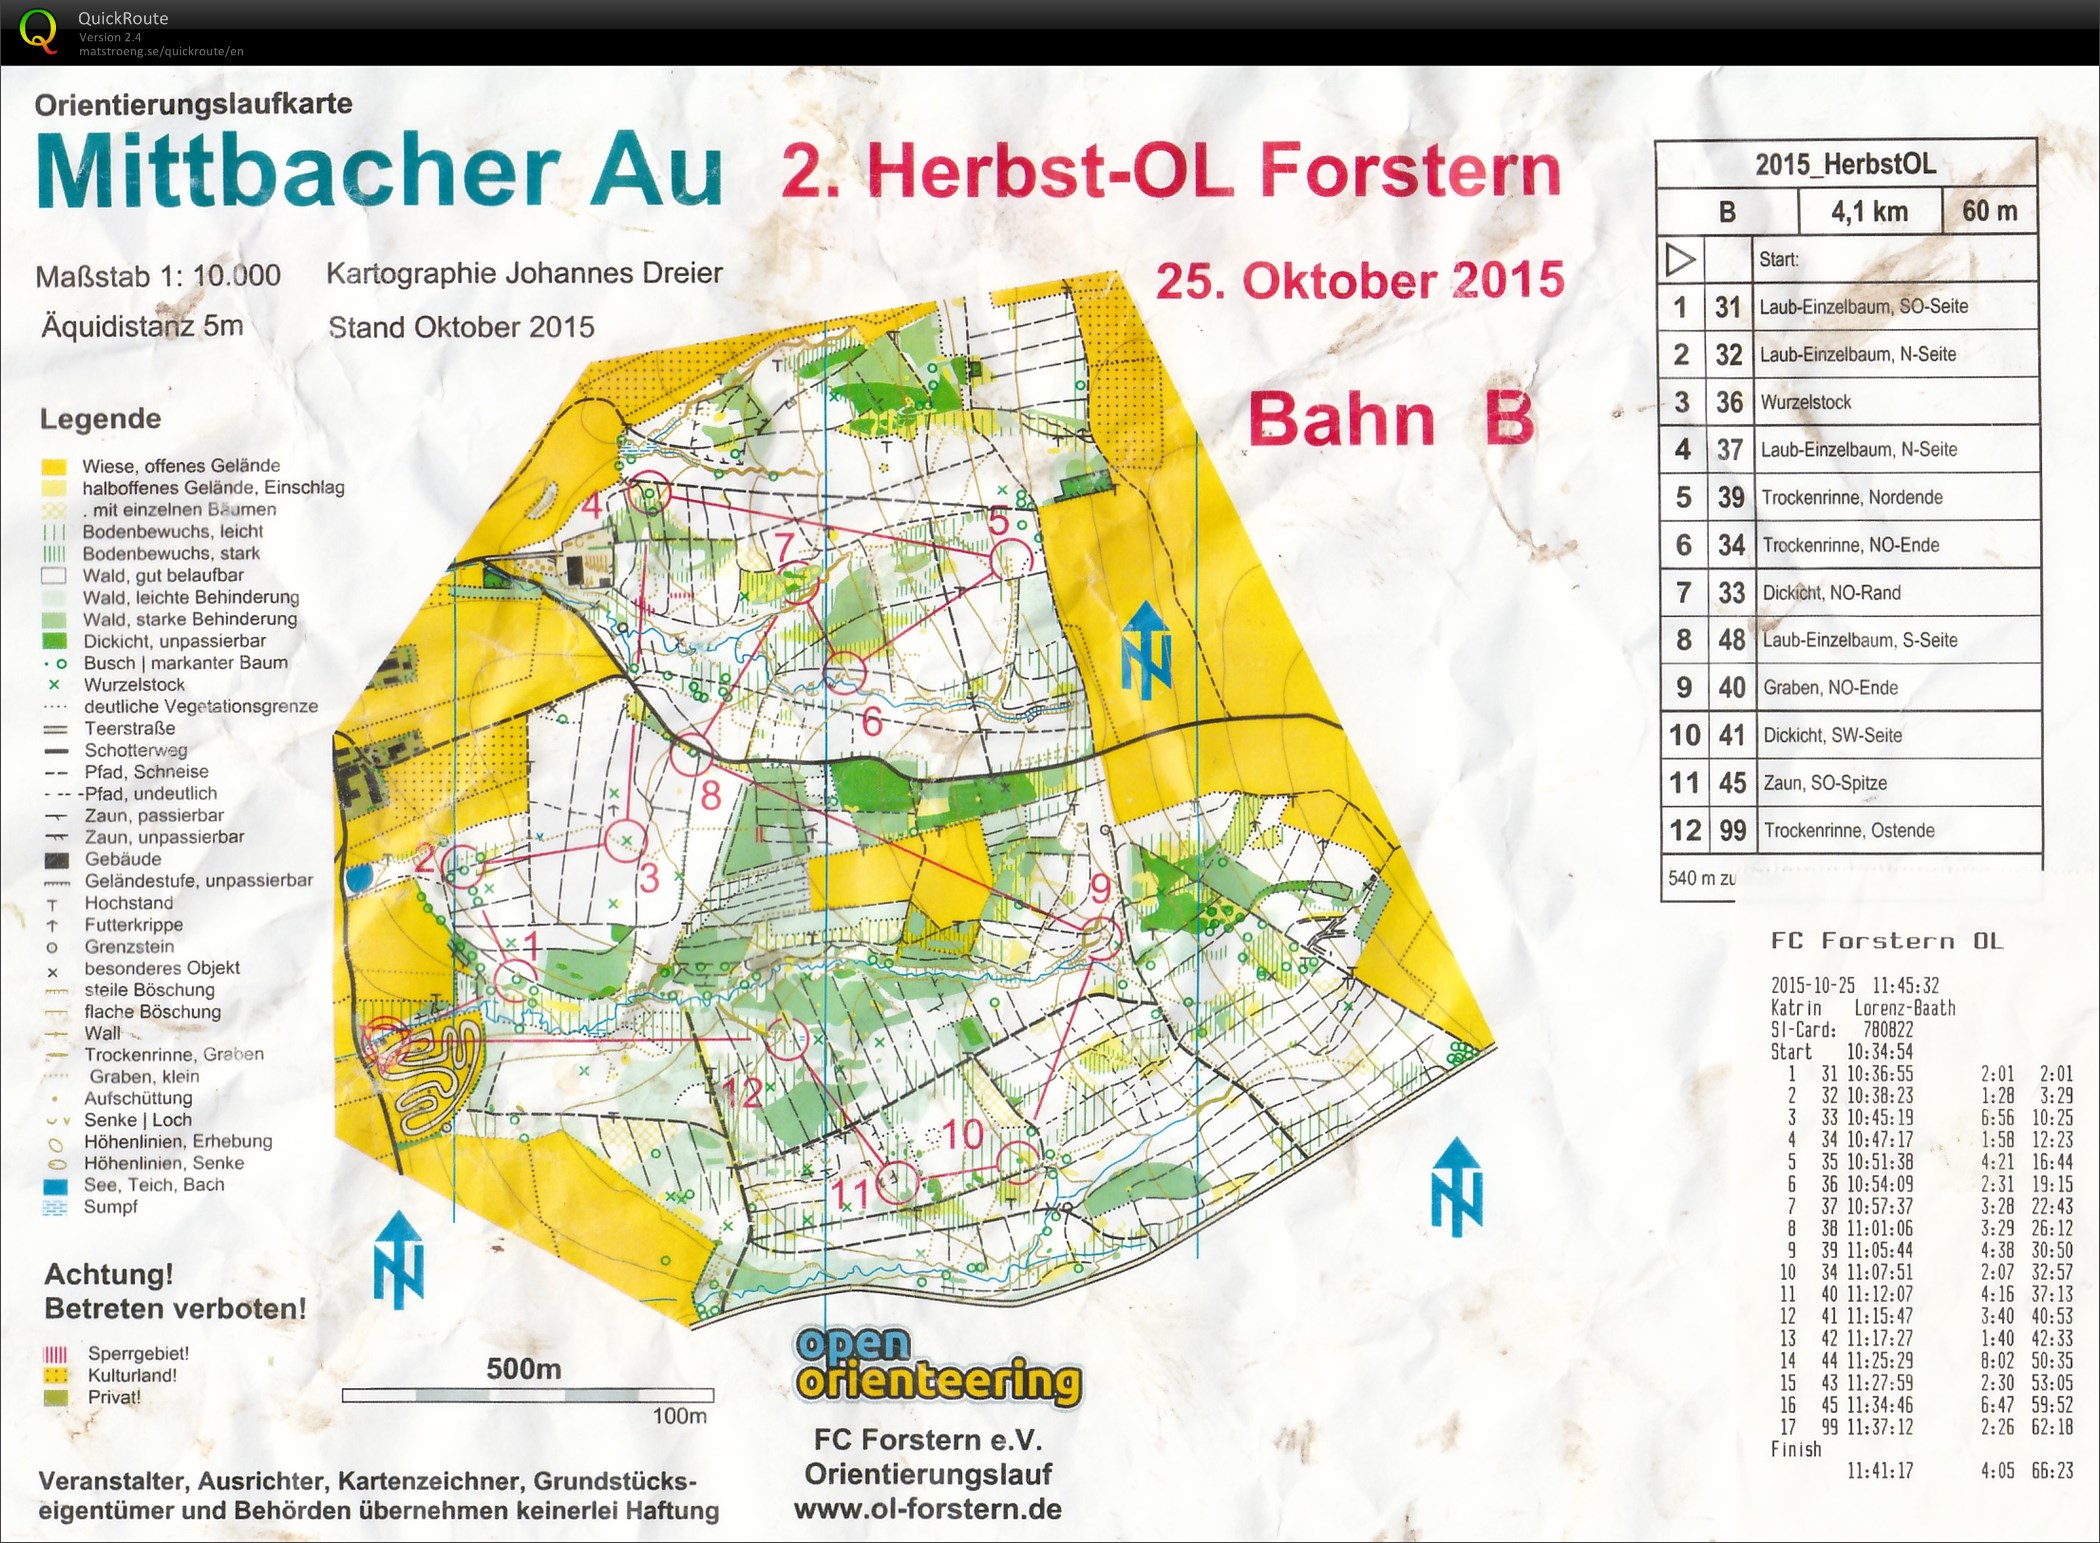 Herbst-OL Forstern (25/10/2015)